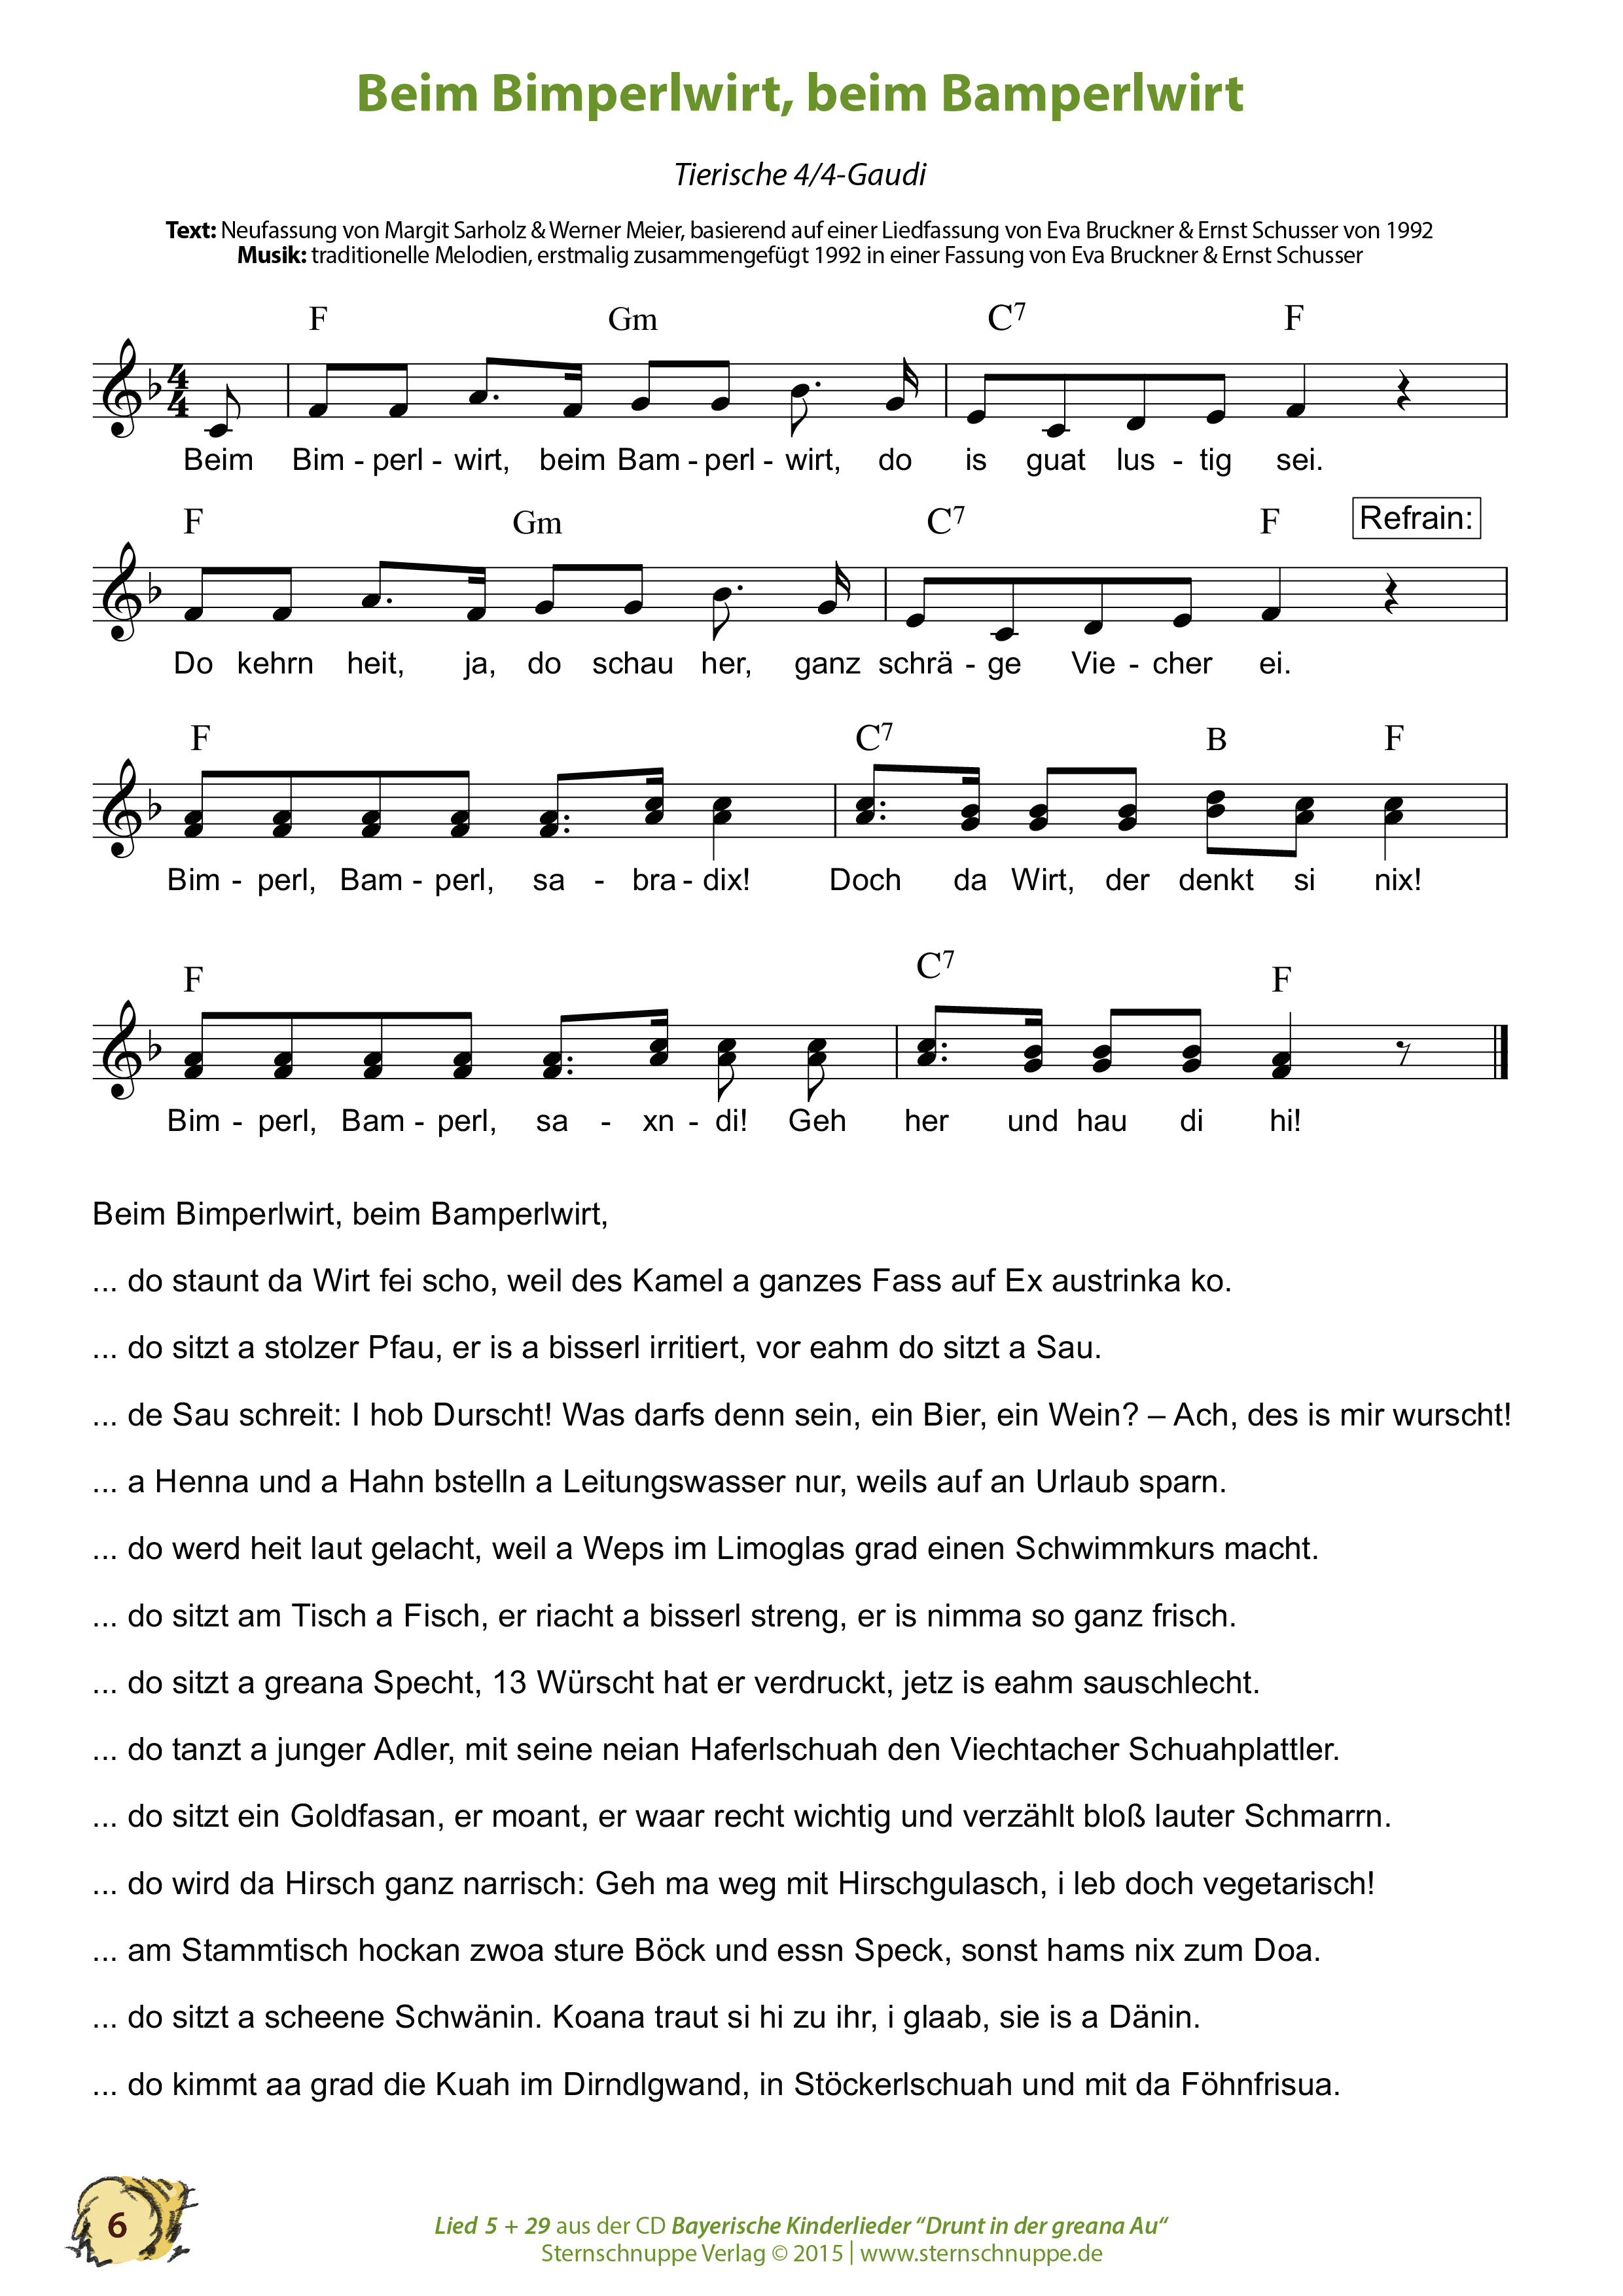 Liedtext, Akkorde und Noten vom Kinderlied Beim Bimperlwirt, beim Bamperlwirt (1. Besuch)